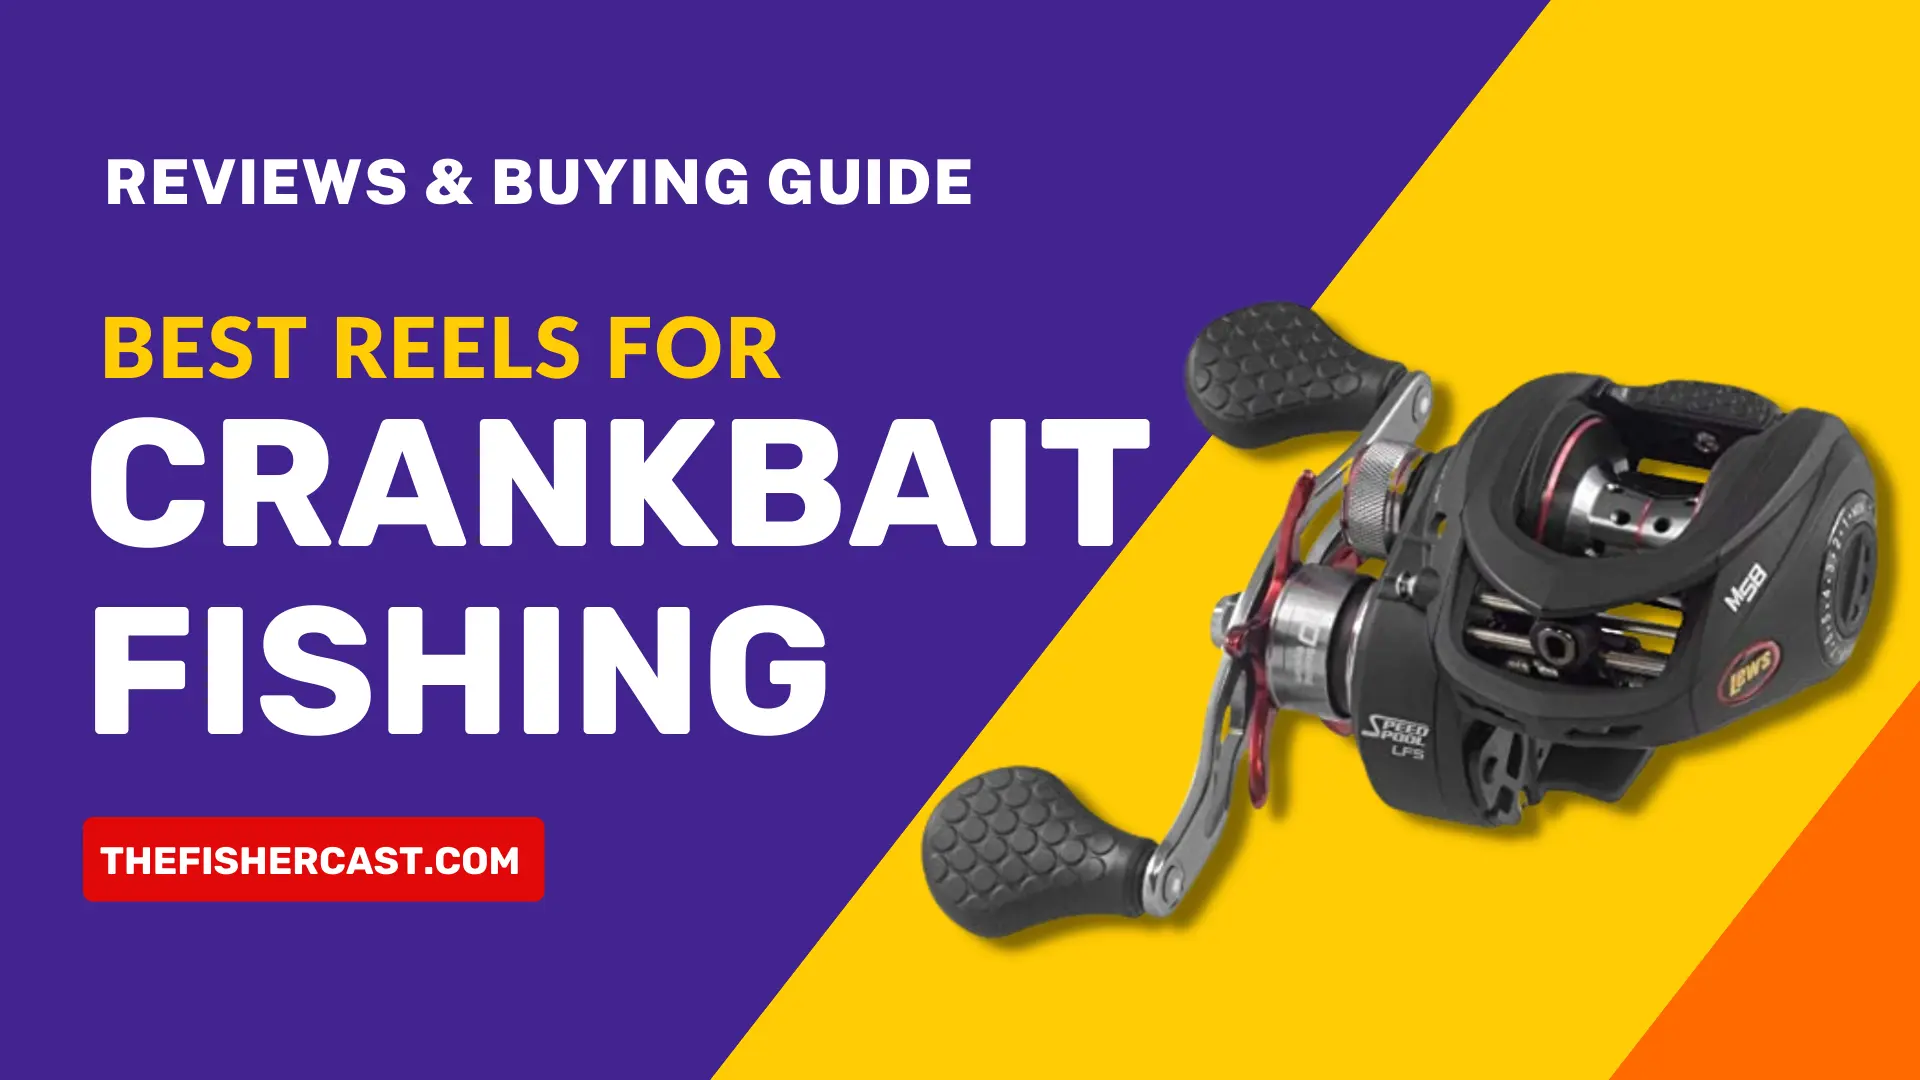 Best Reels for Crankbait Fishing